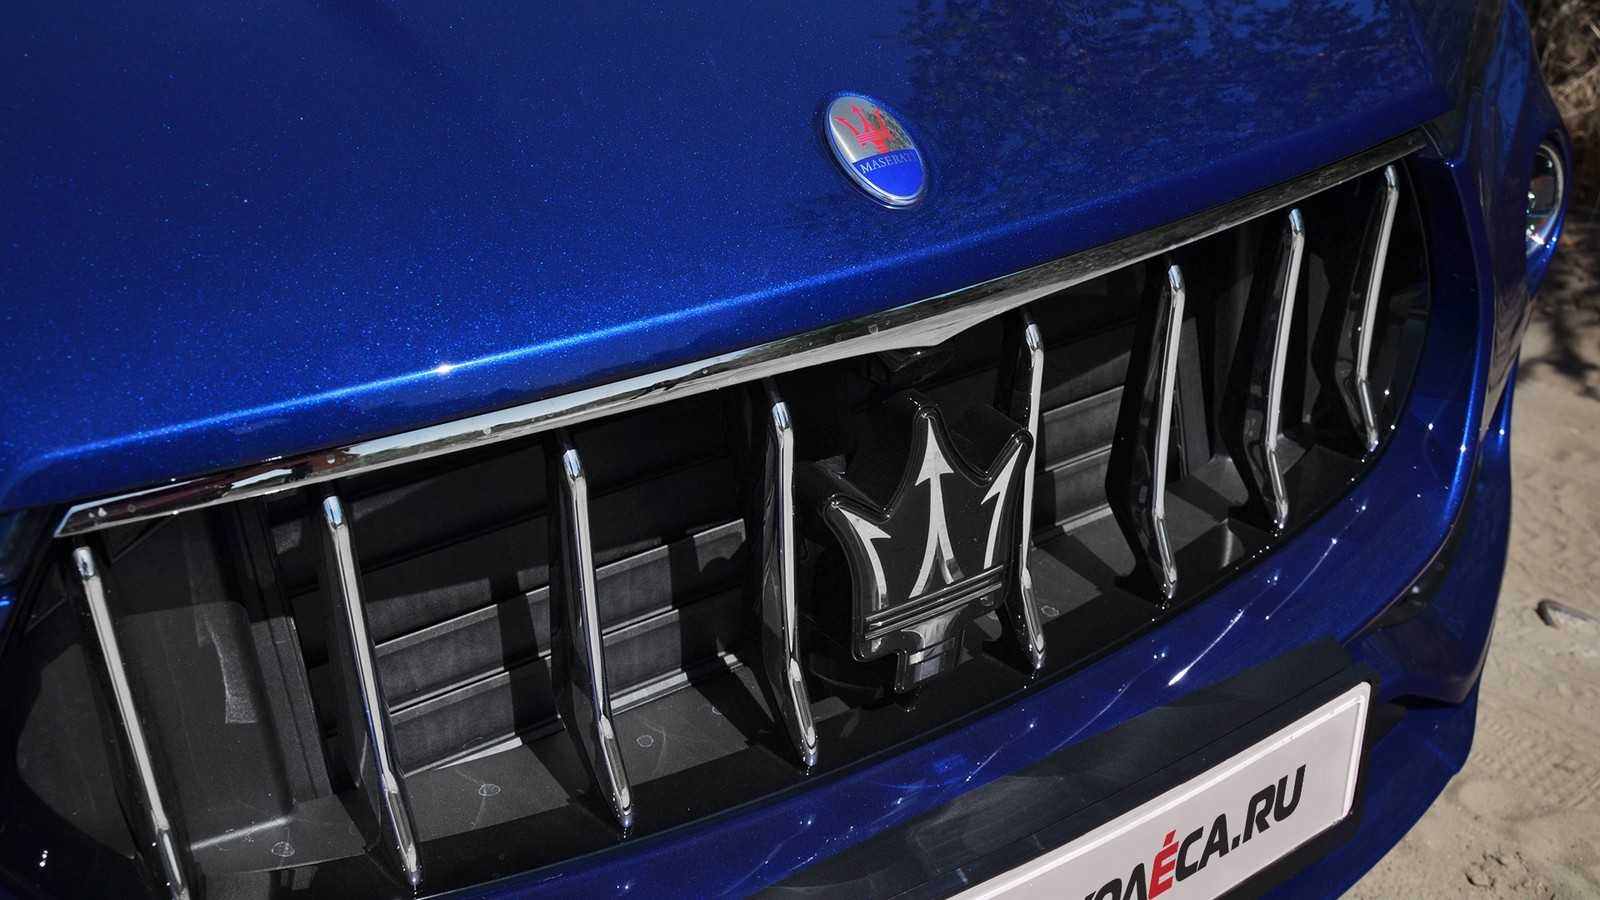 Maserati levante